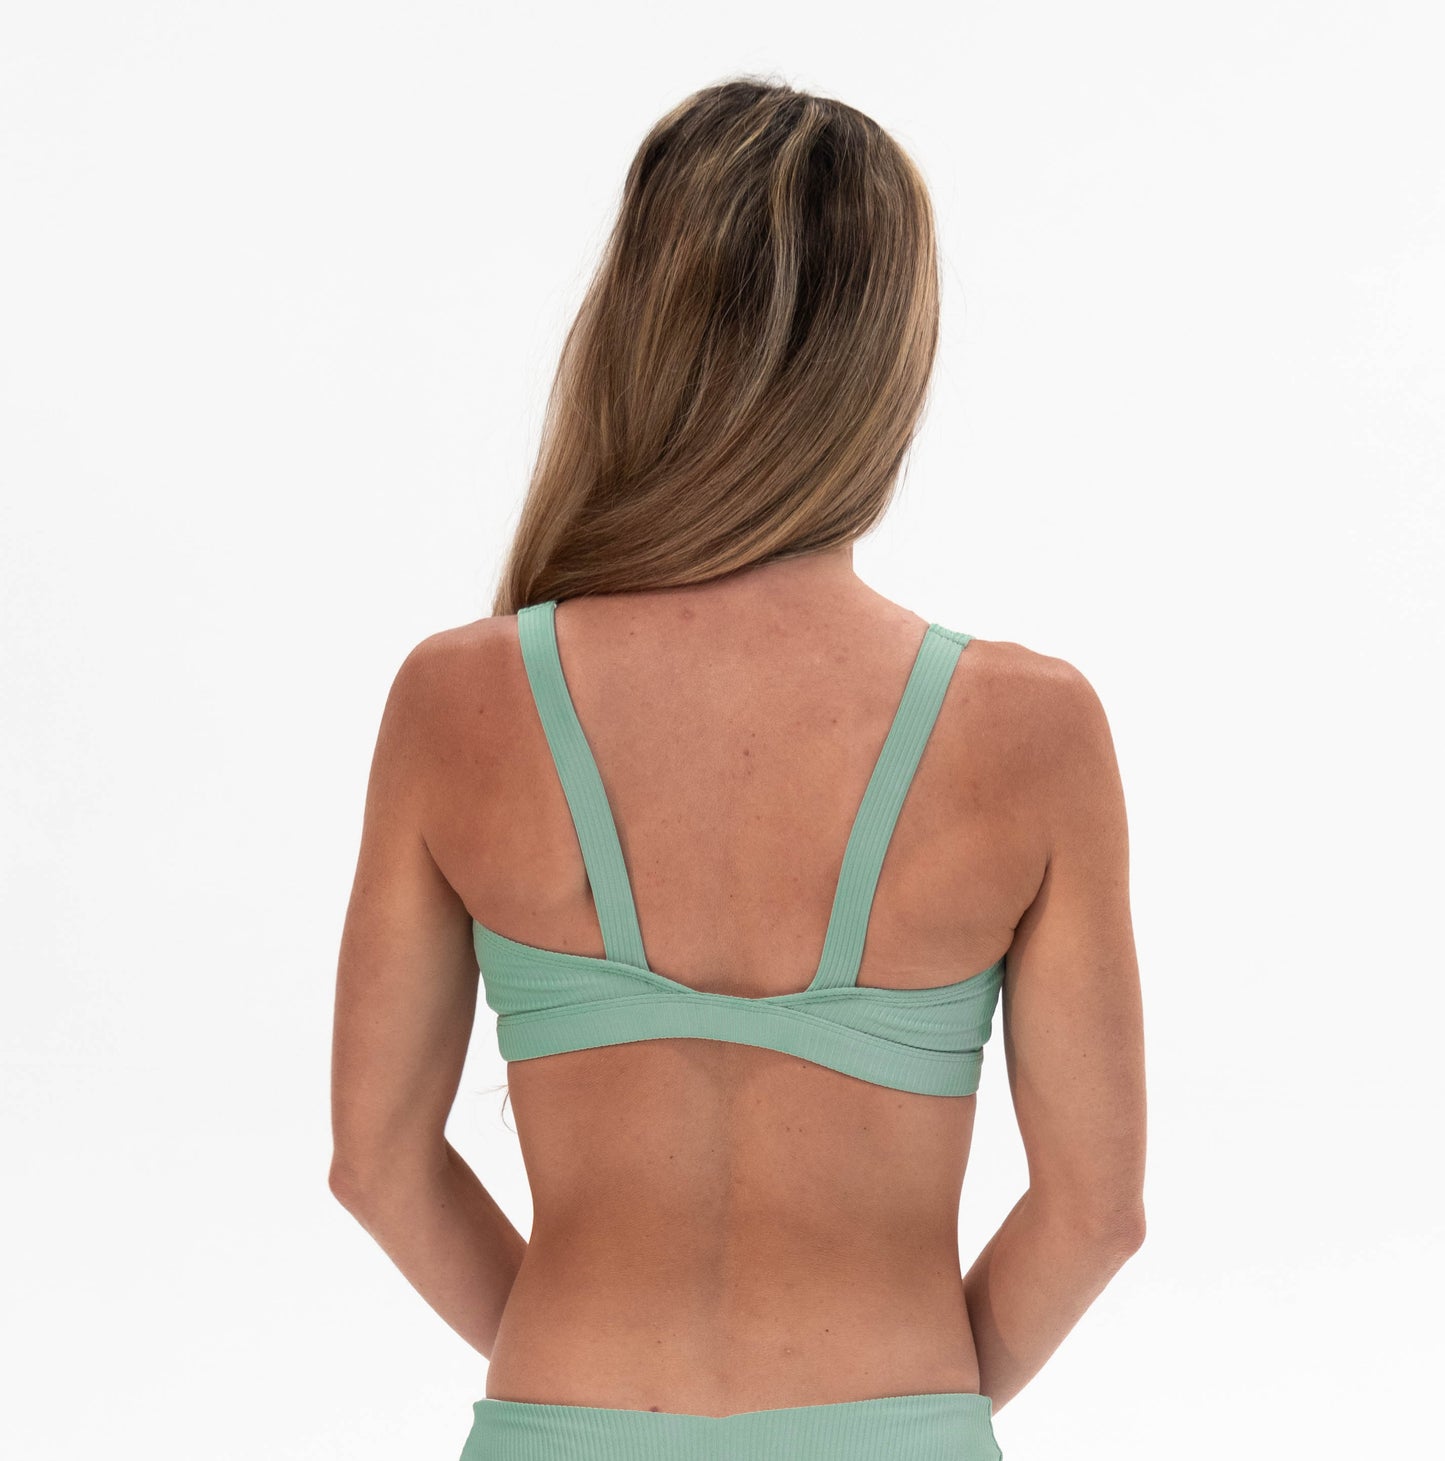 the back of a woman in a green bikini top